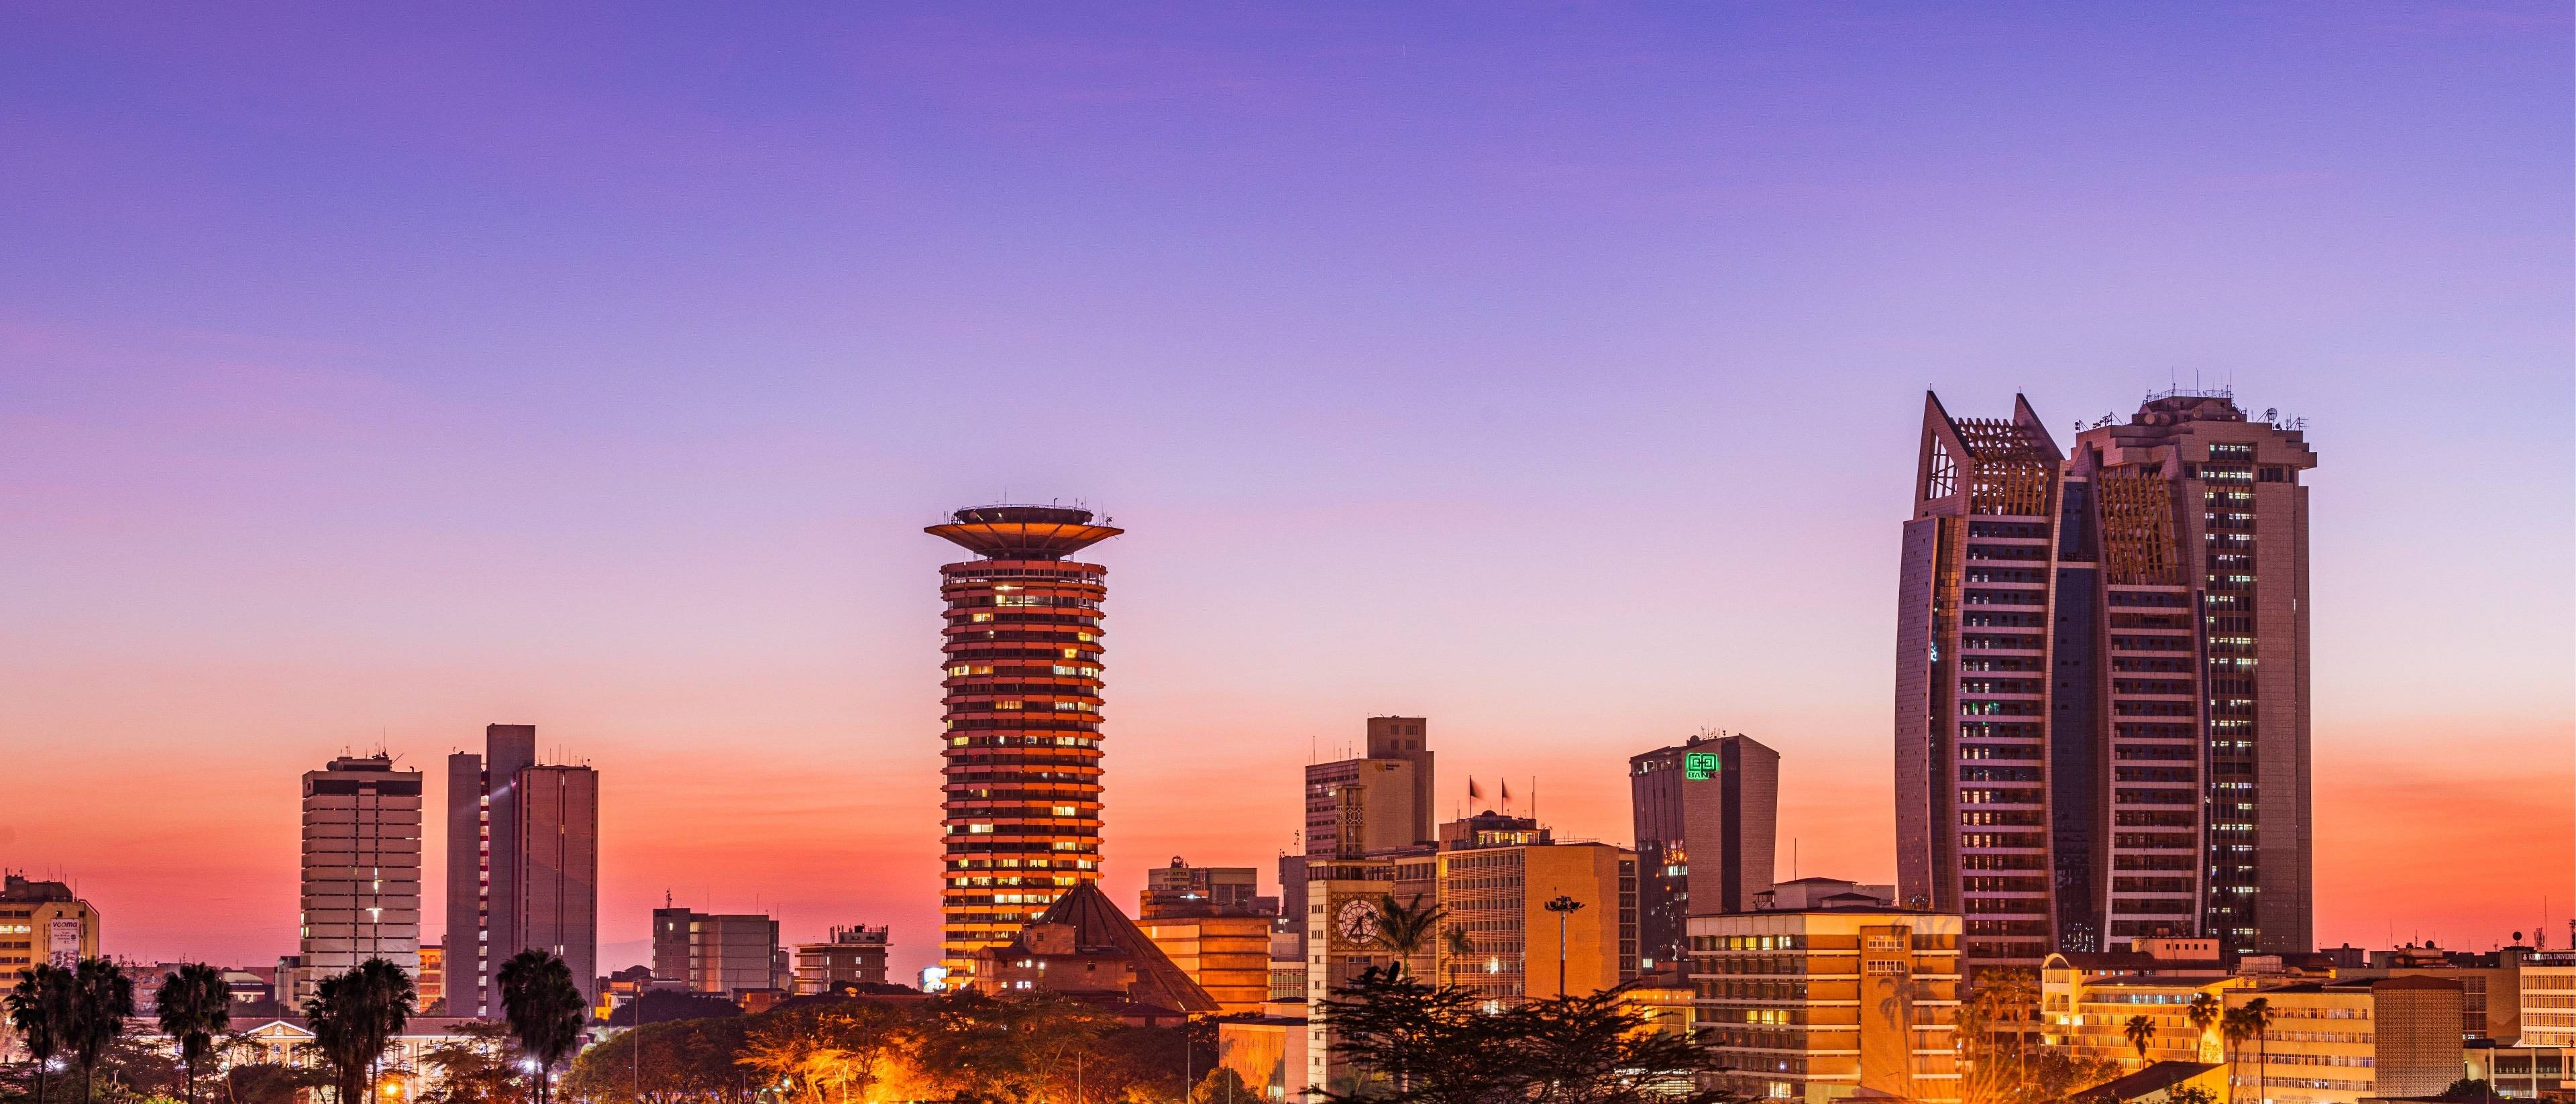 Bienvenido a Nairobi, la ciudad multicultural y de la vida salvaje